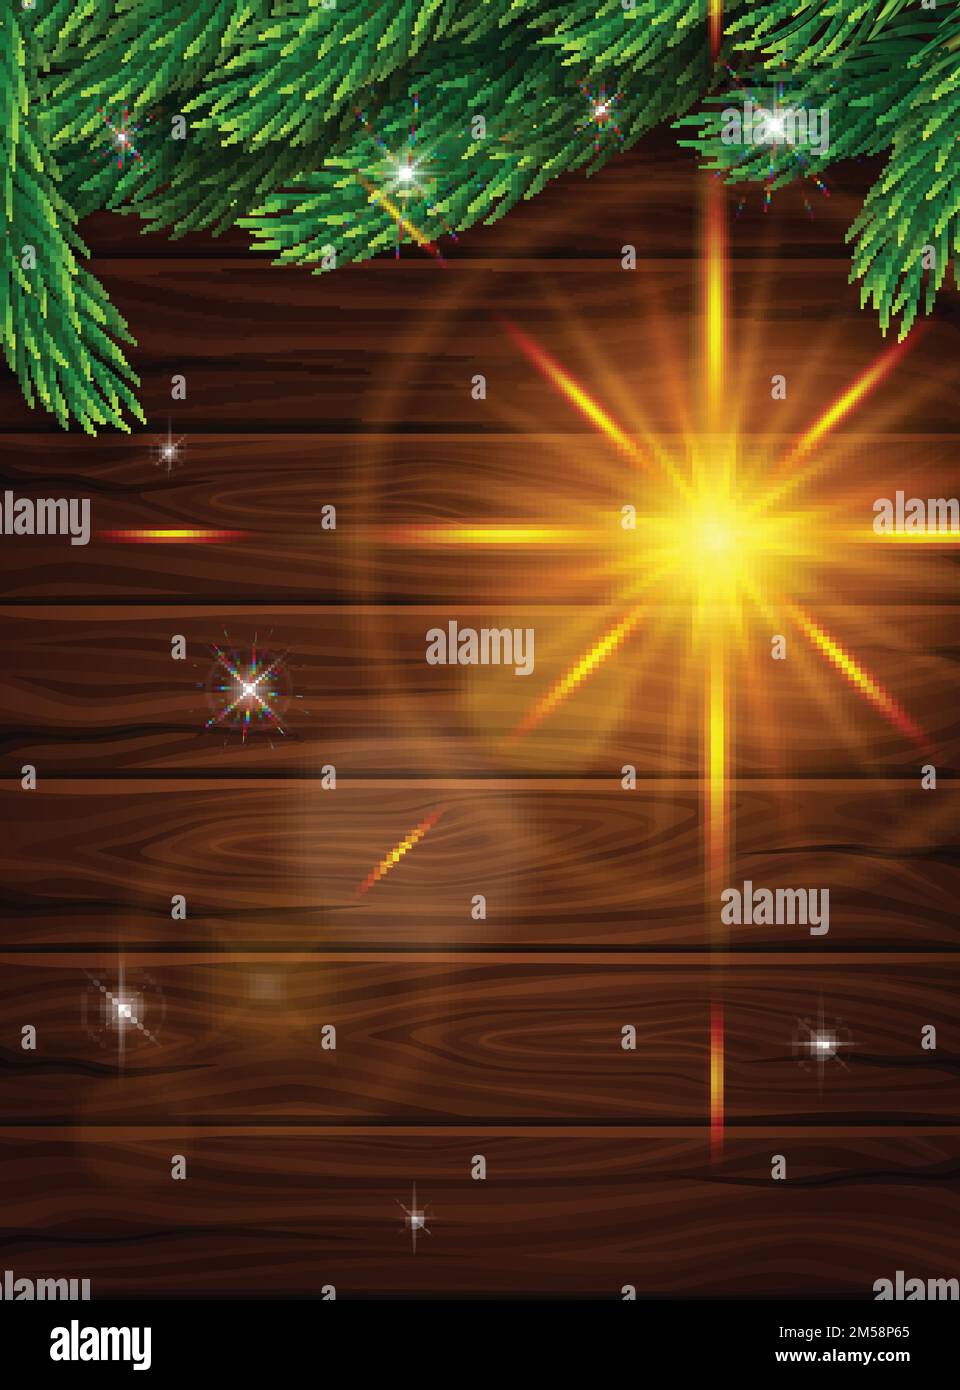 Poster realistico di alta qualità per Natale. Rami realistici di abete sullo sfondo di tavole di legno scuro. Effetto luminoso della lente. Illustrazione vettoriale Illustrazione Vettoriale